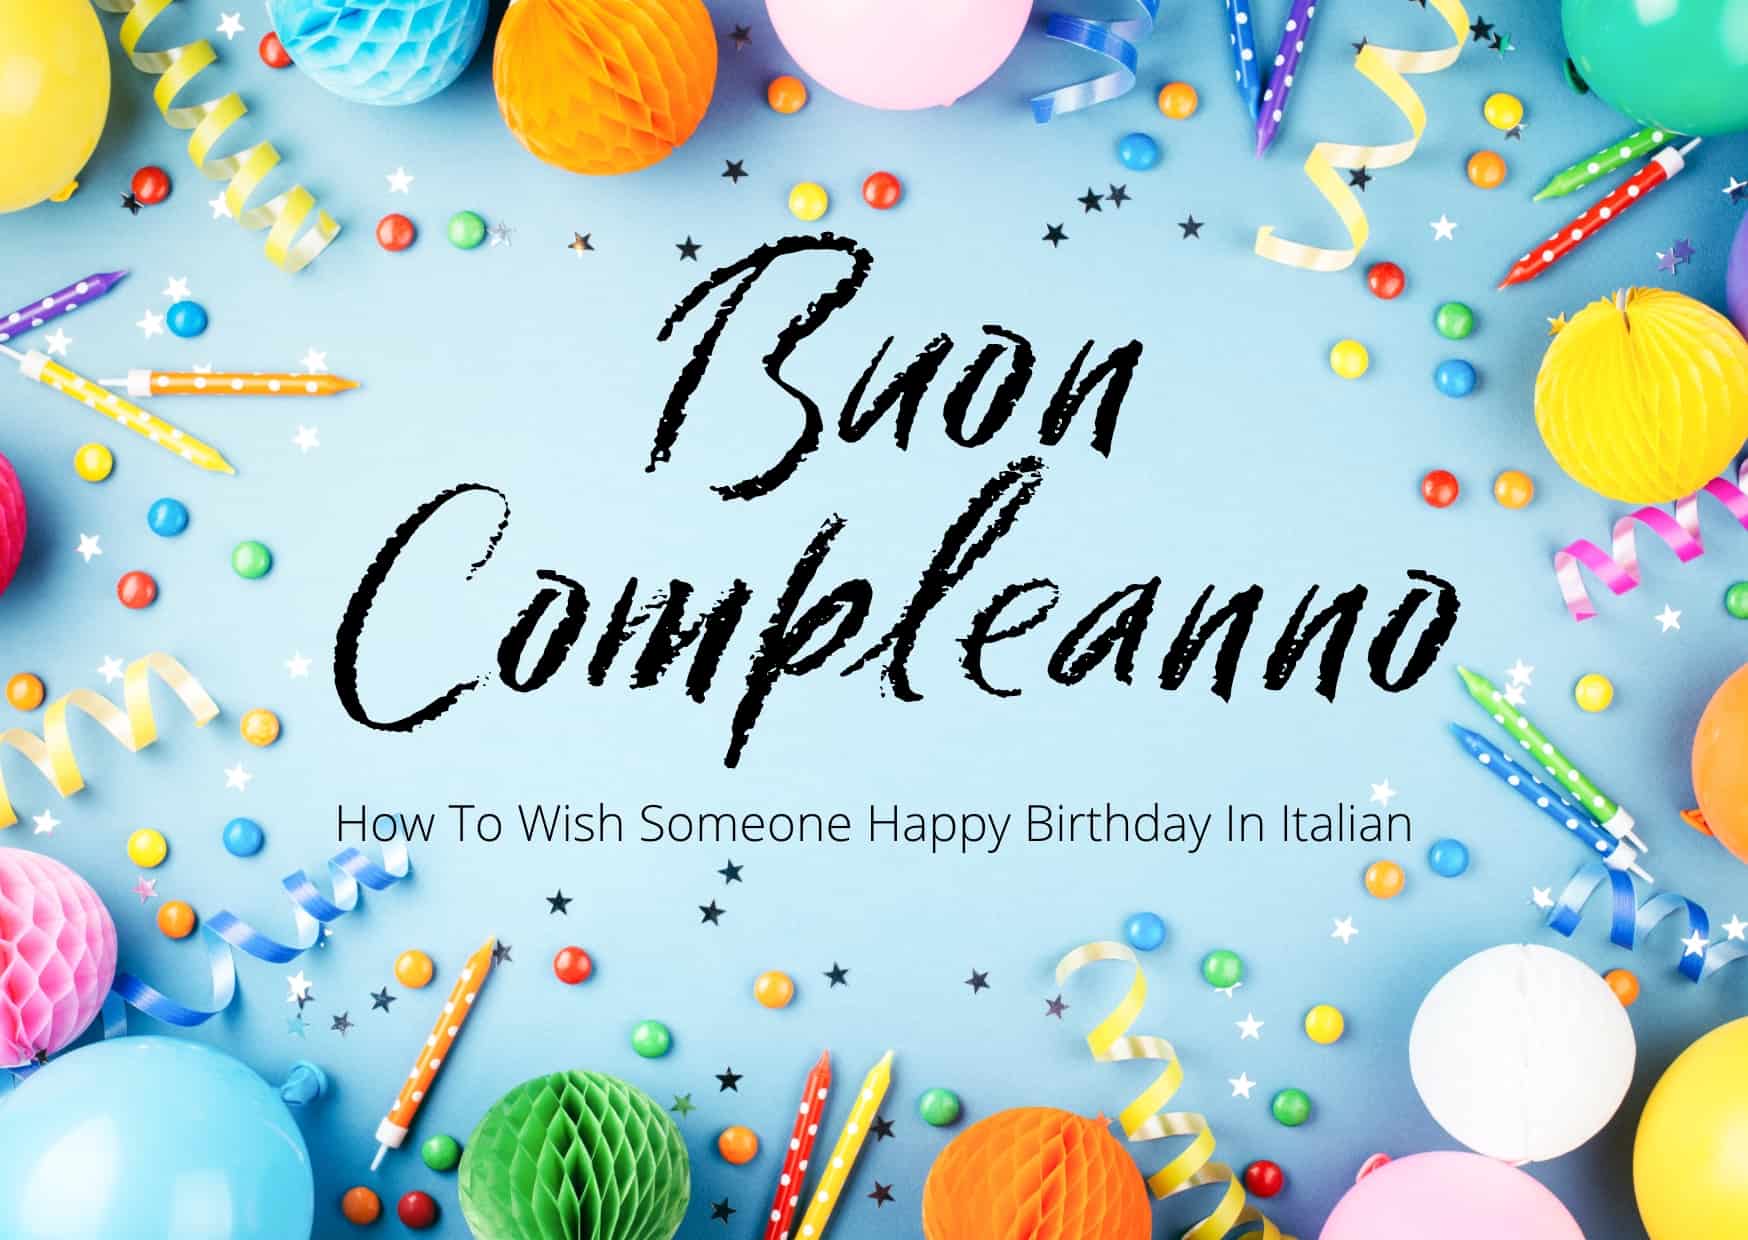 Happy birthday italian